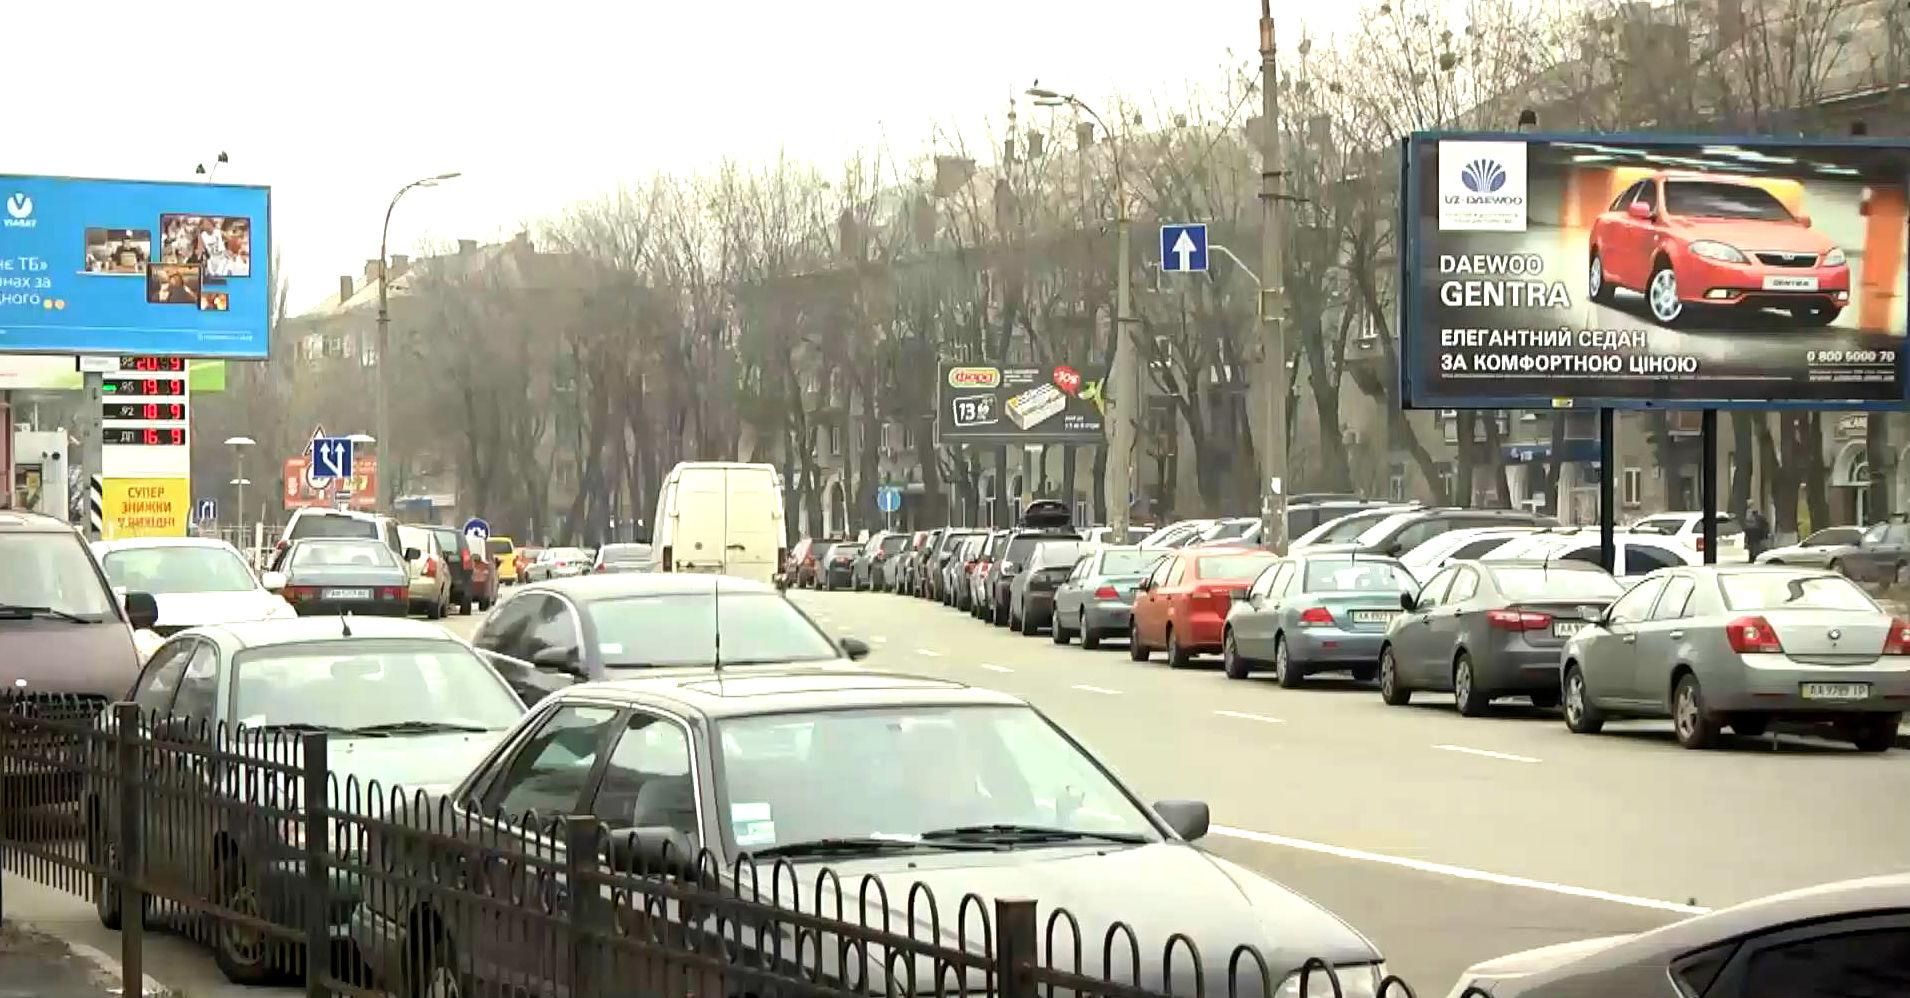 Рекламы на улицах Киева может стать меньше